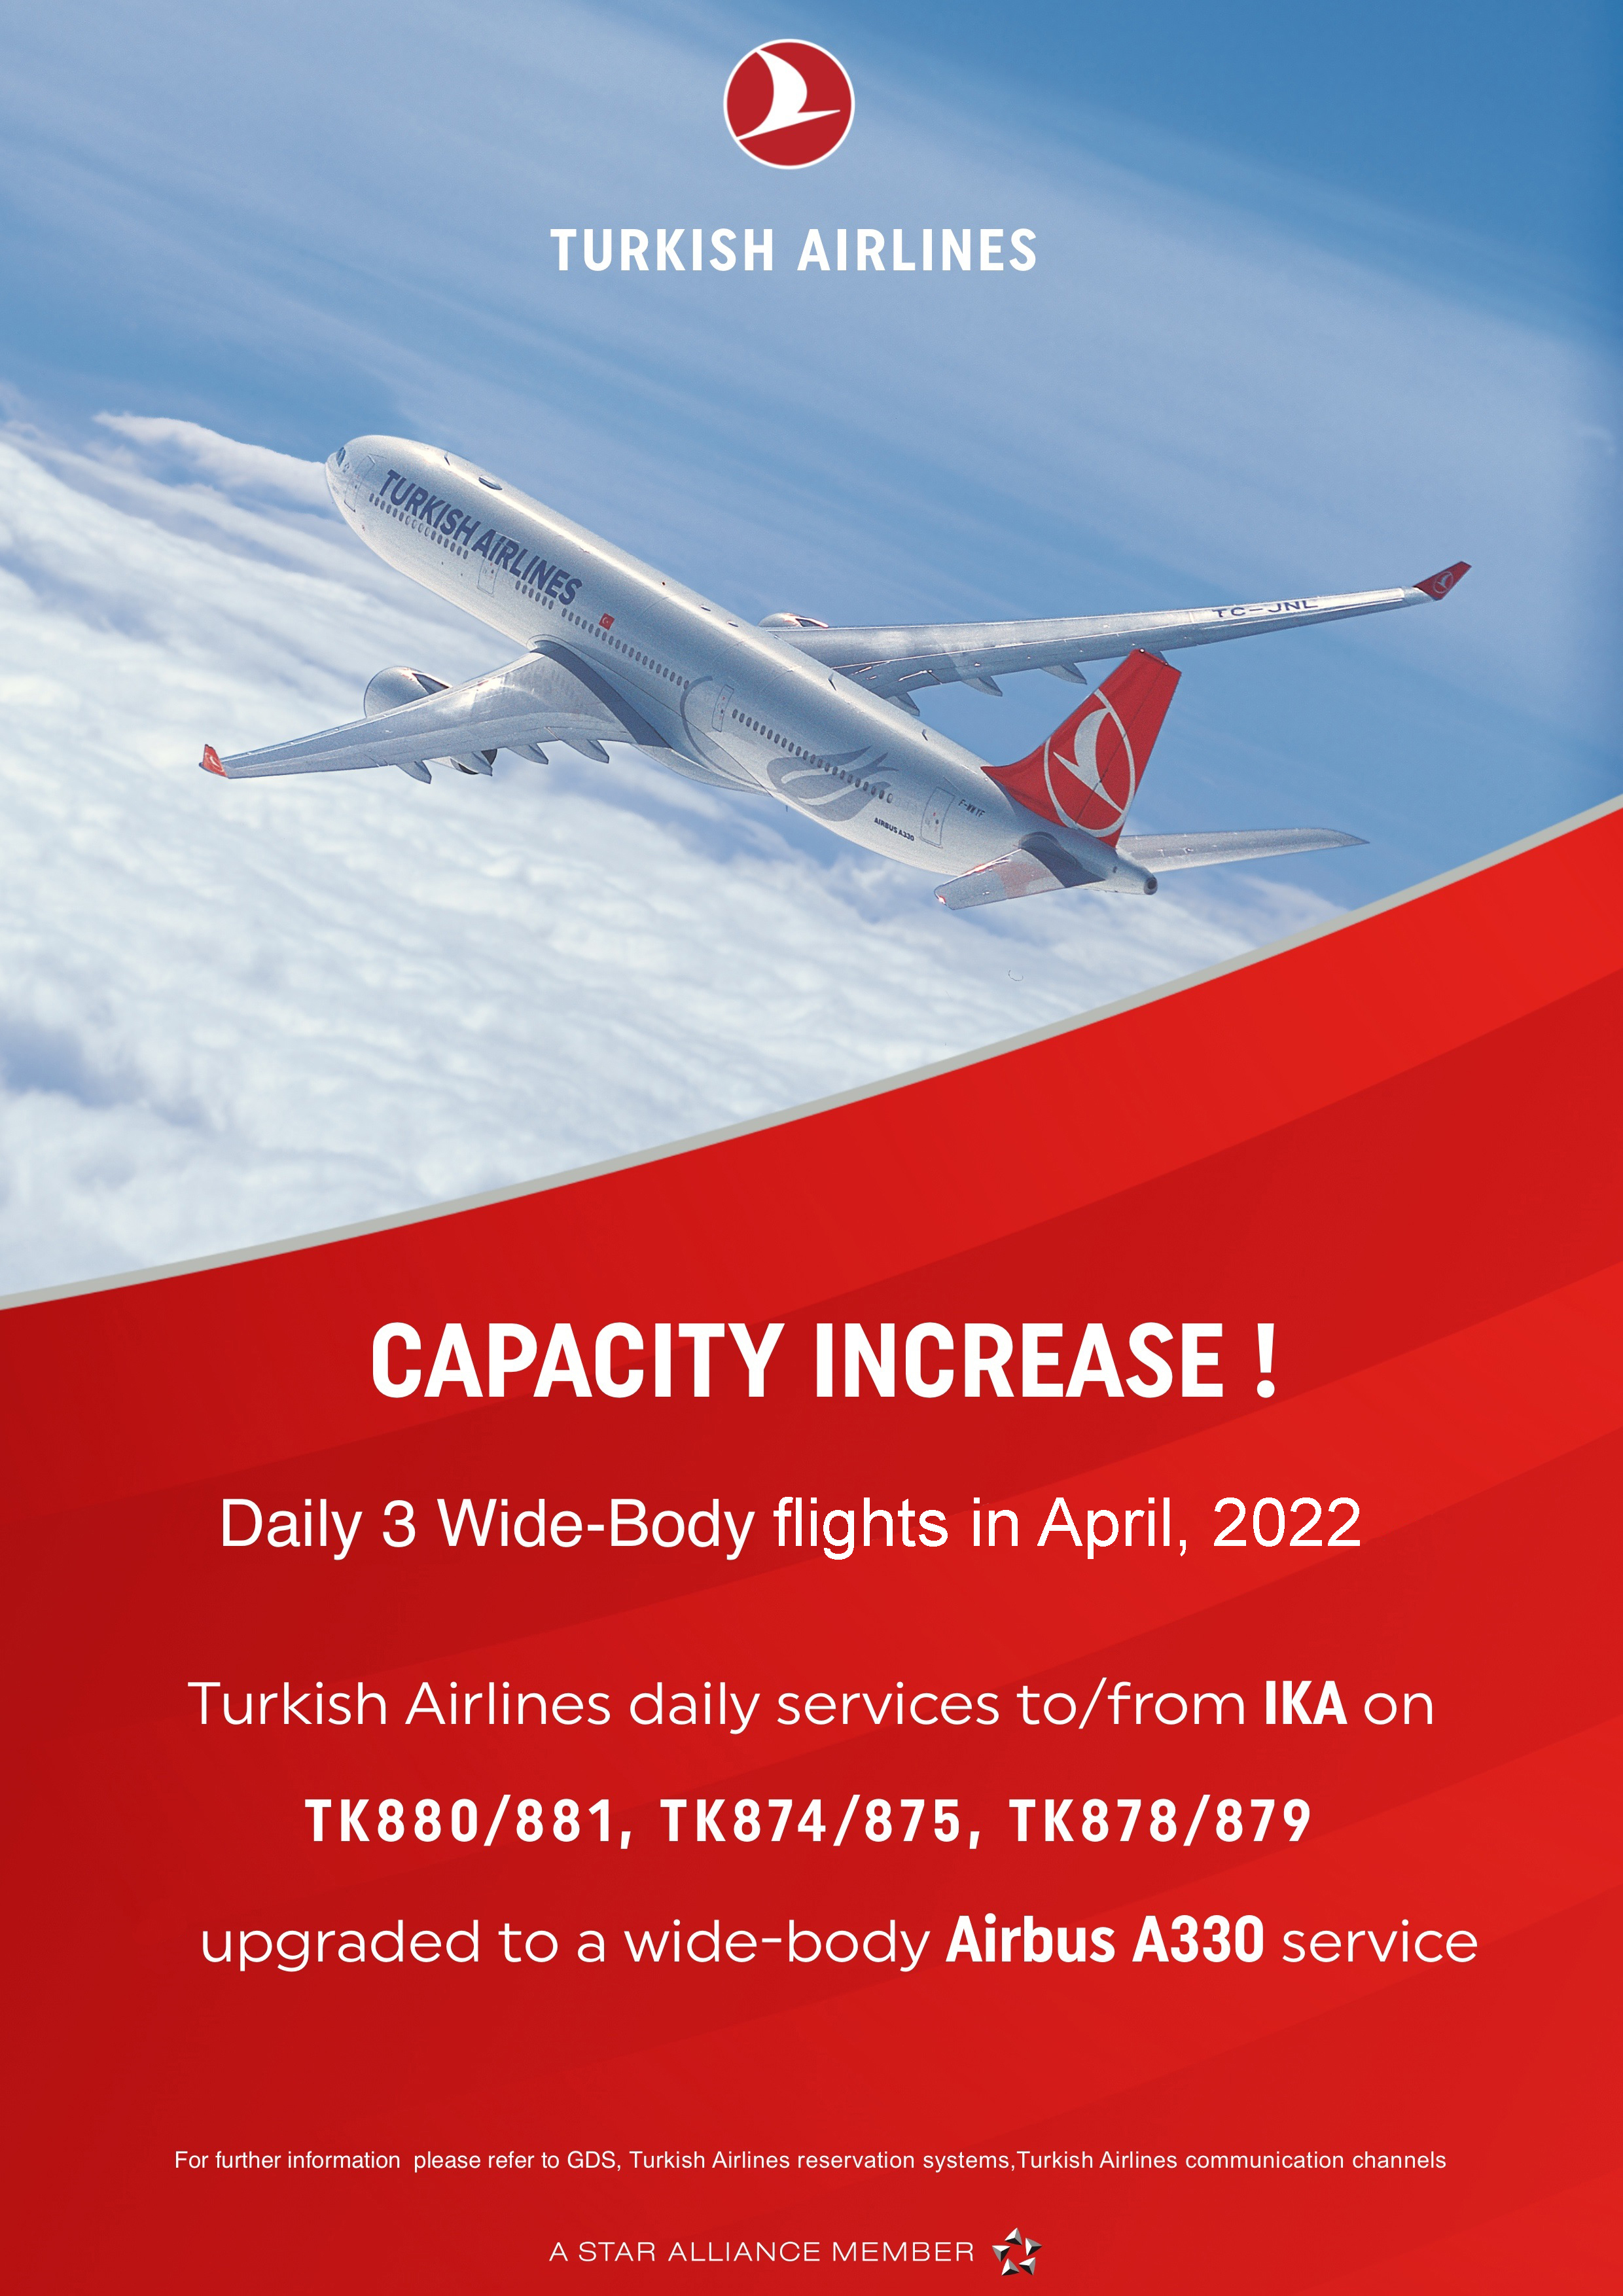 بخشنامه و اطلاعیه   هواپیمایی ترکیش درباره افزایش ظرفیت در پروازهای ترکیش